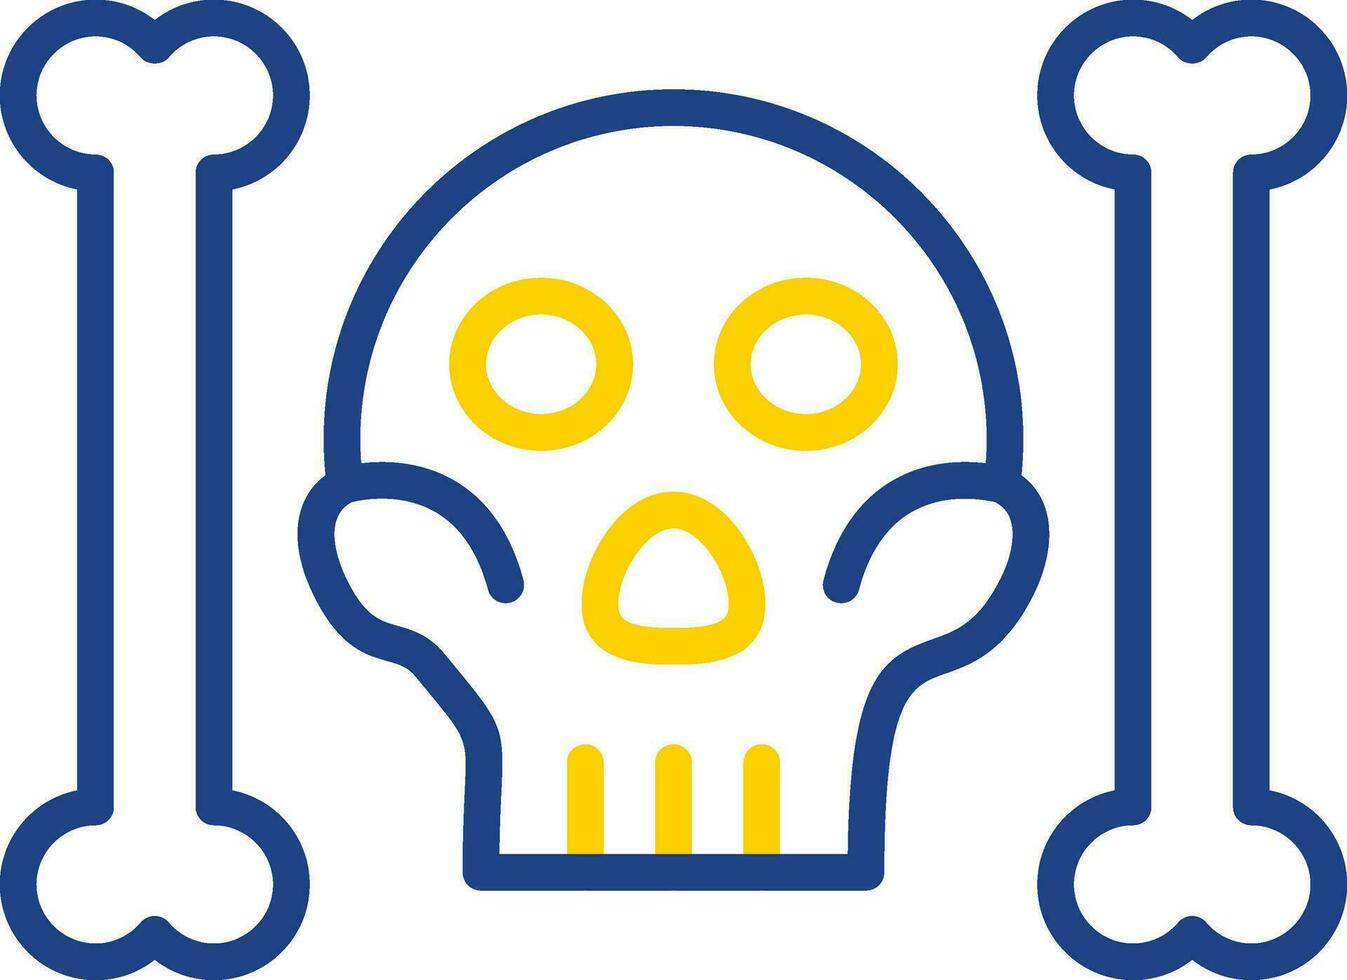 Skull And Bones Vector Icon Design